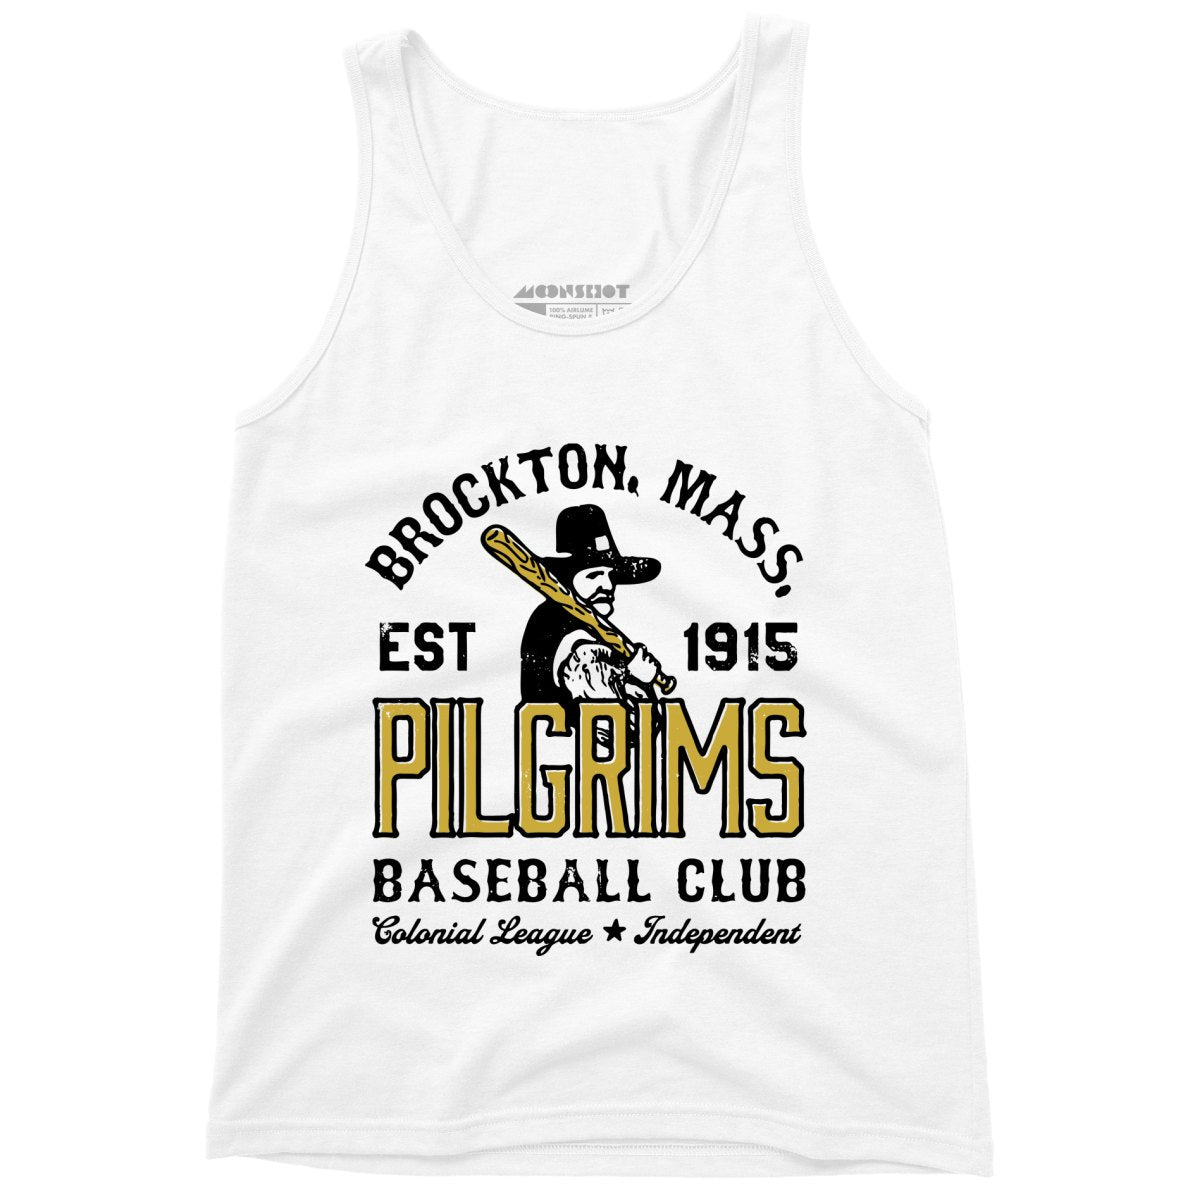 Brockton Pilgrims - Massachusetts - Vintage Defunct Baseball Teams - Unisex Tank Top